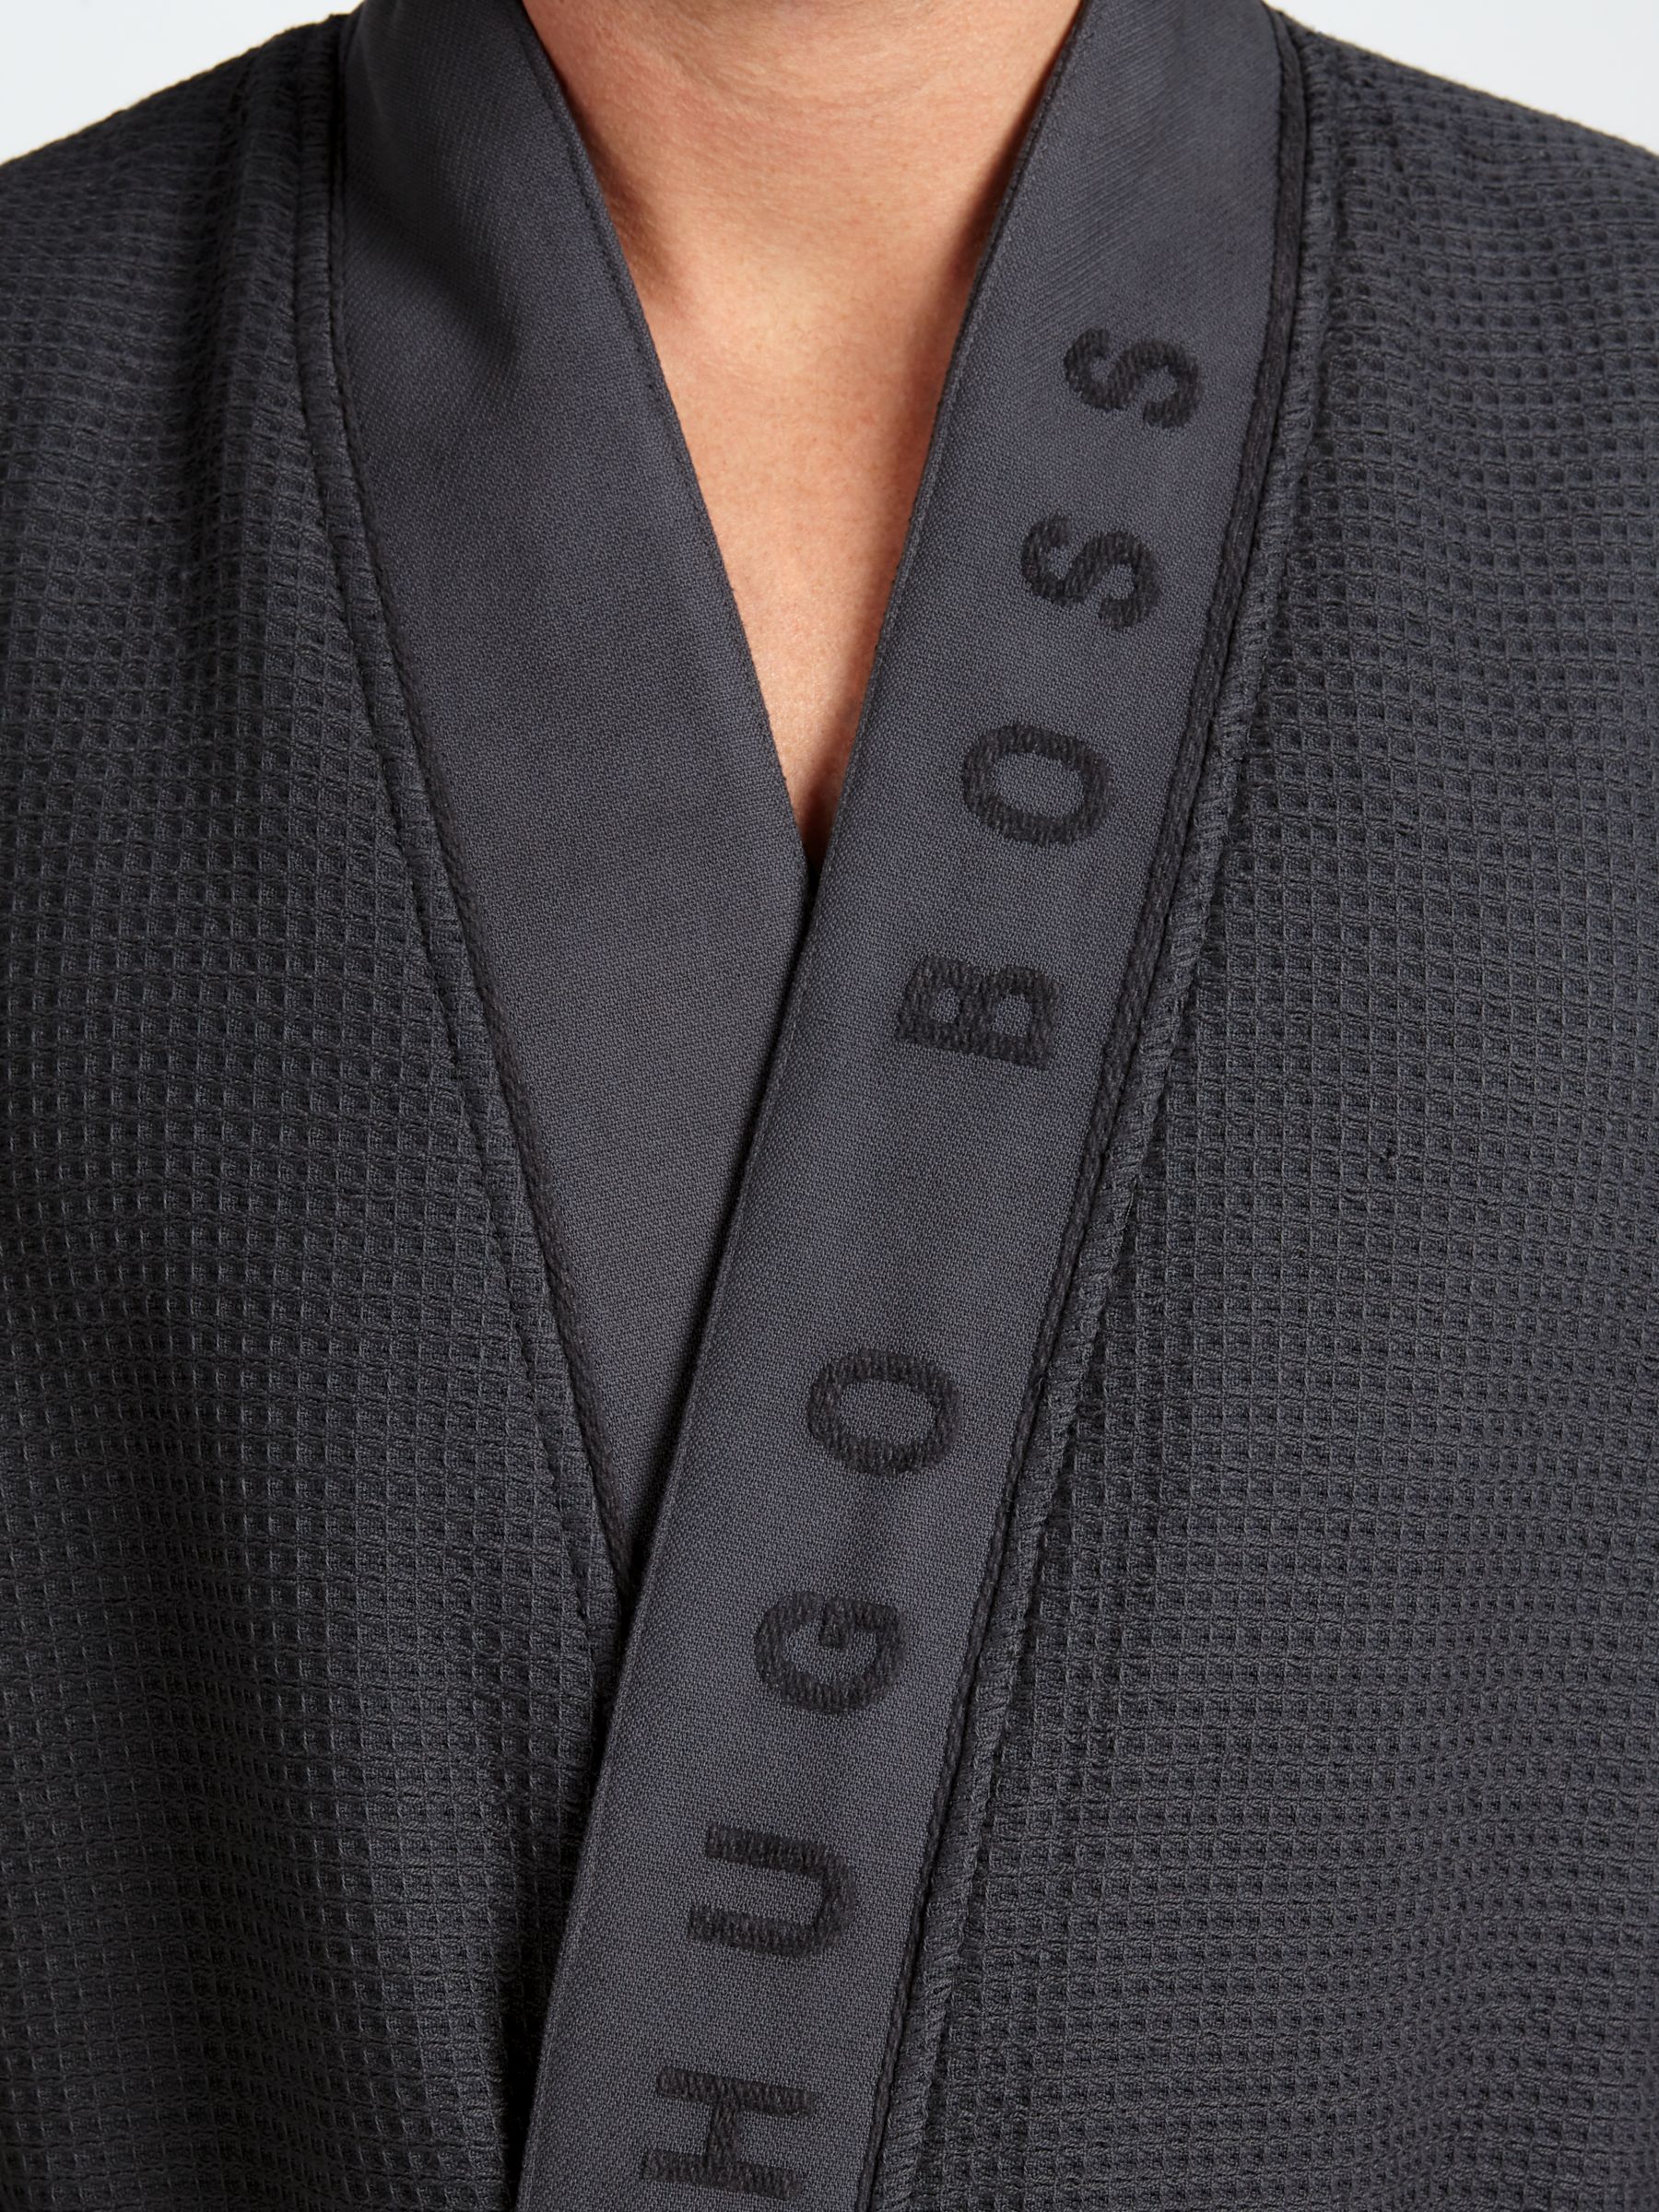 hugo boss robe with hood